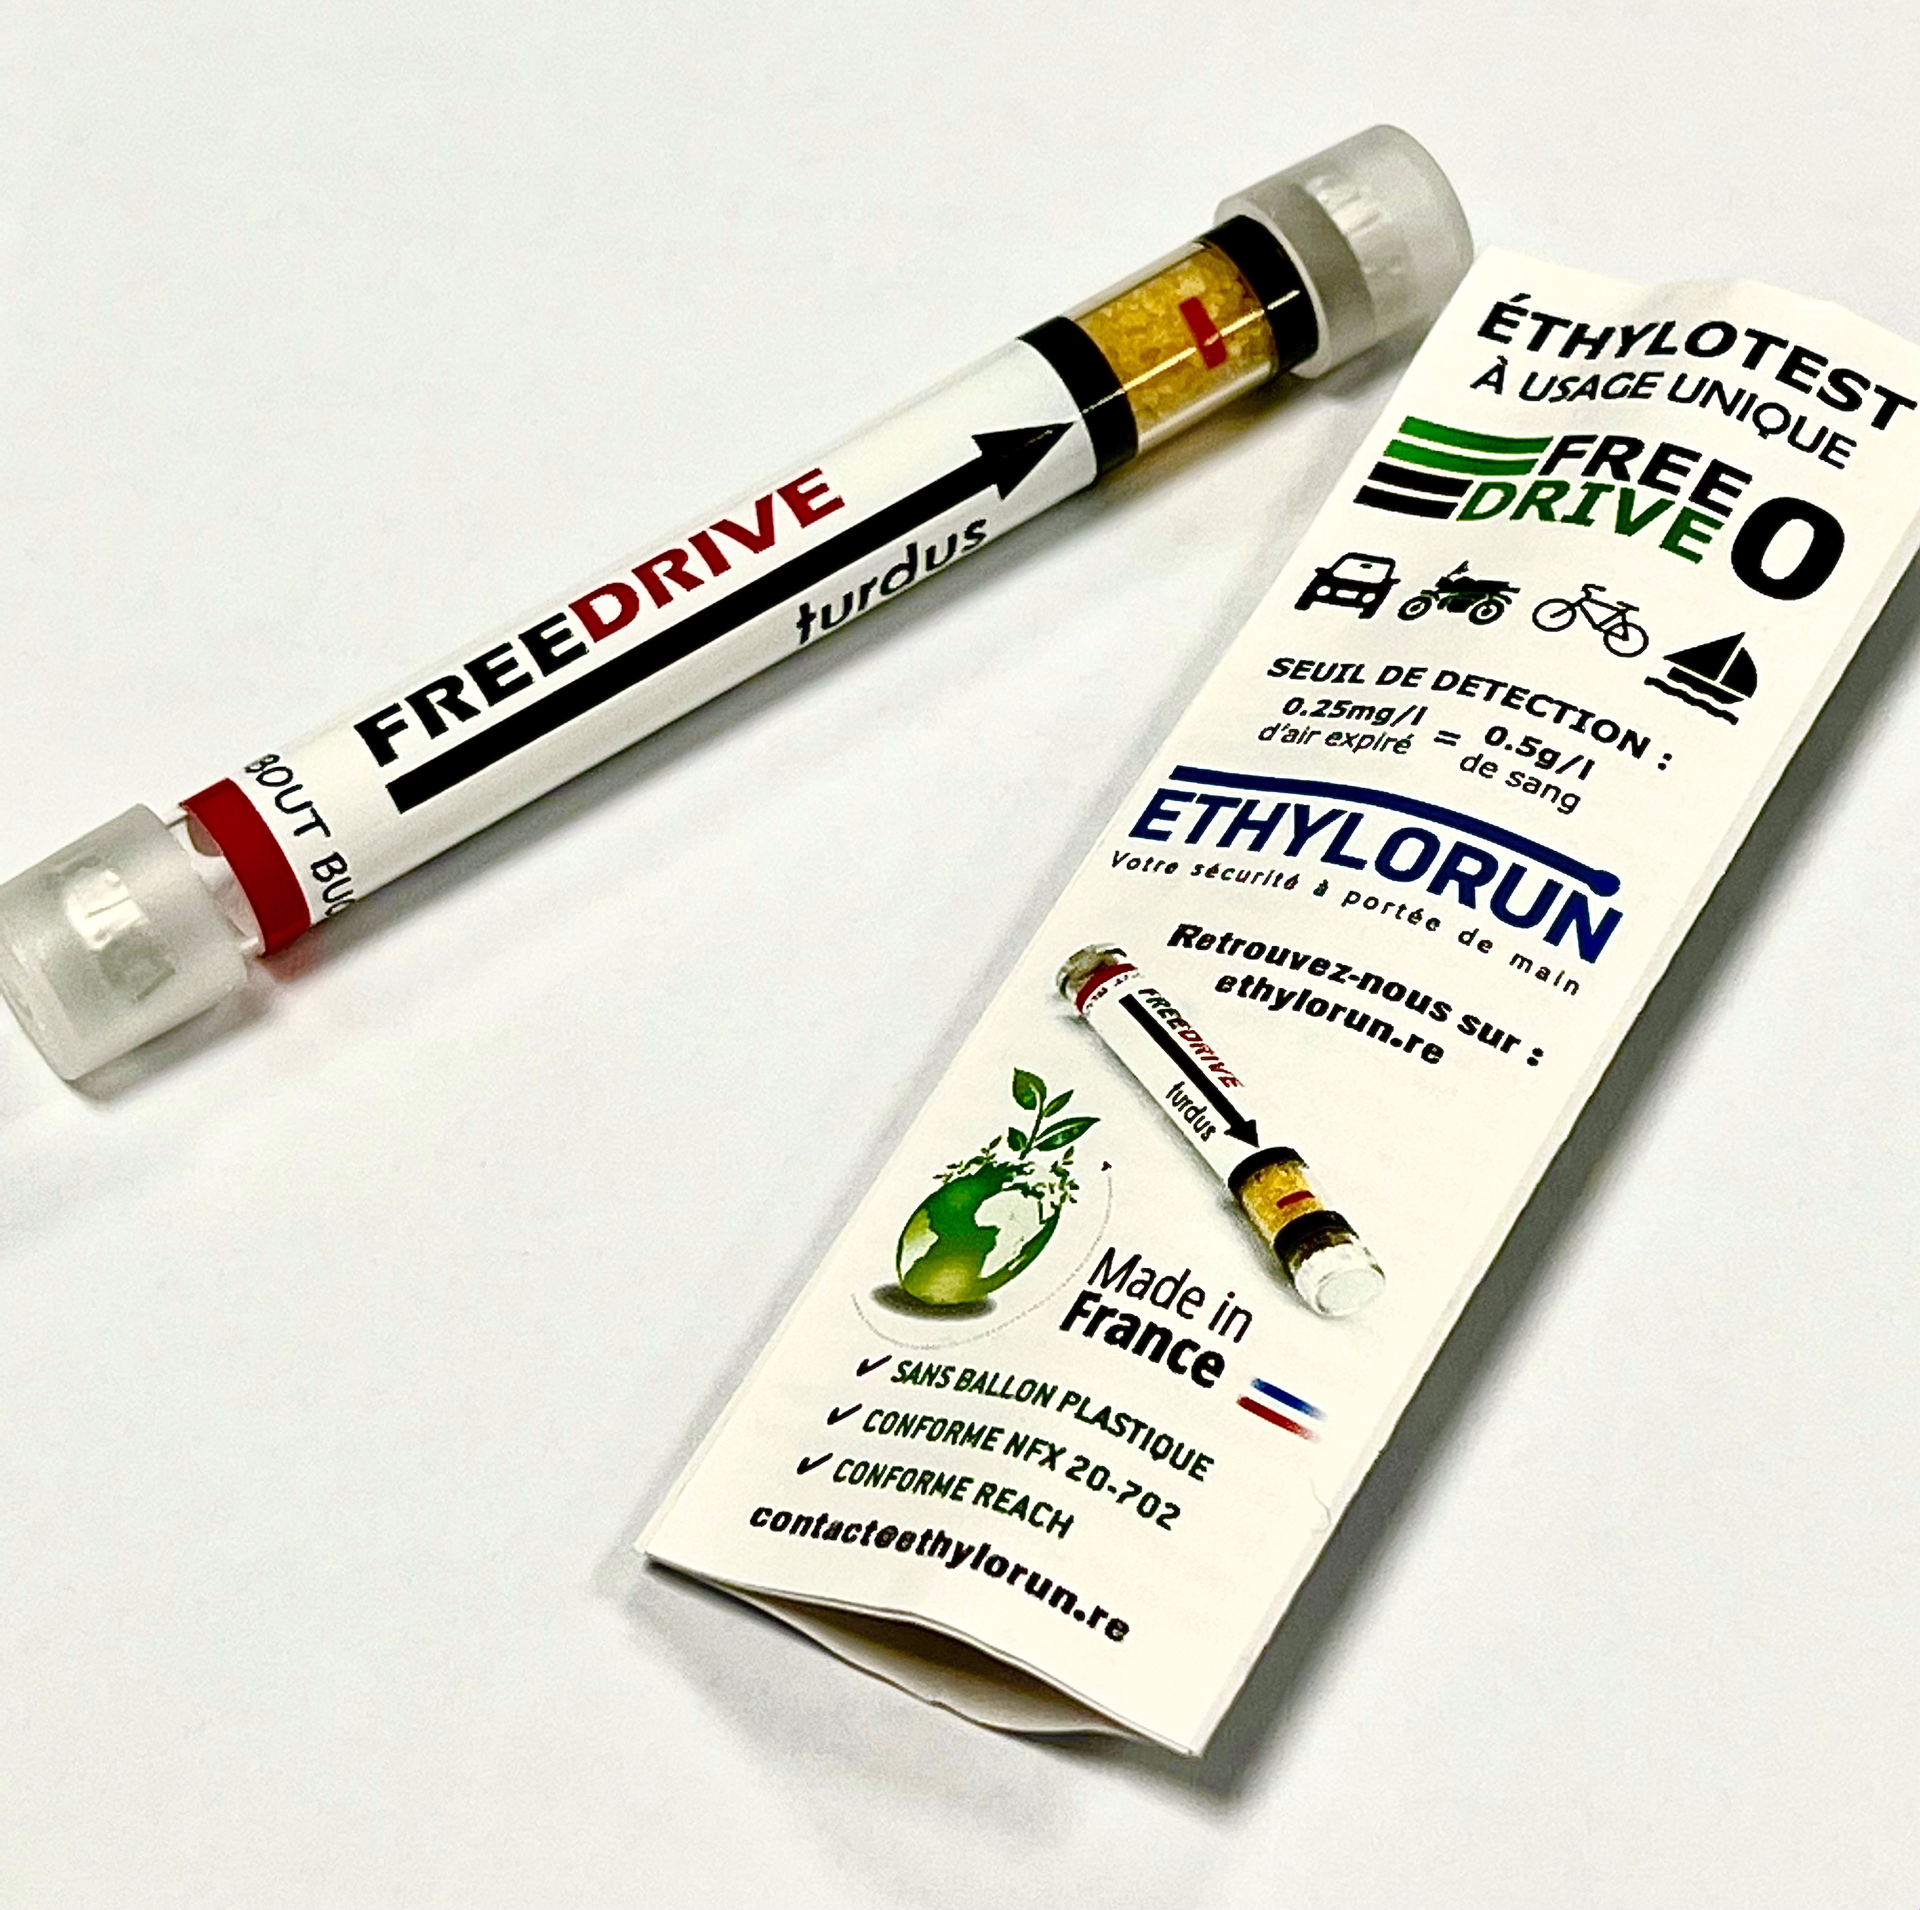 Ethylotest jetable SANS BALLON Freedrive 3 TOUS CONDUCTEURS - LOT